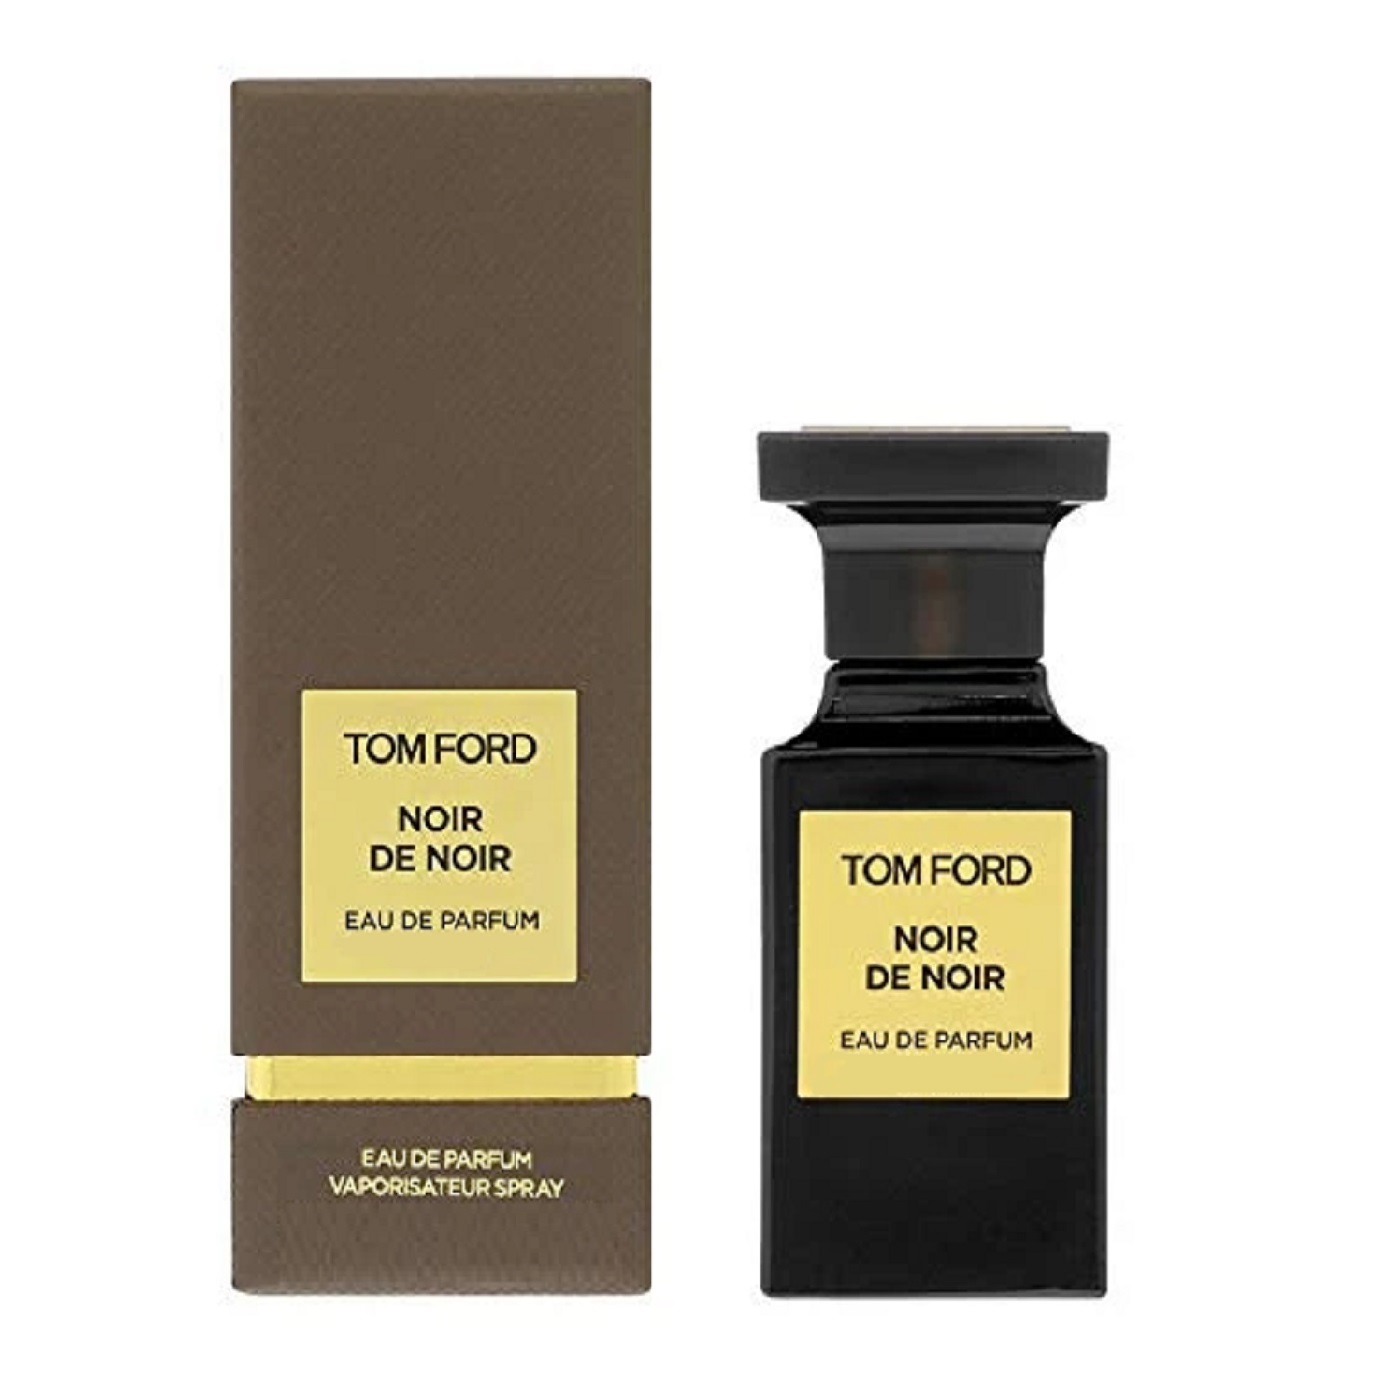 Tom Ford Noir De Noir Eau de Parfum - Eshtir.com